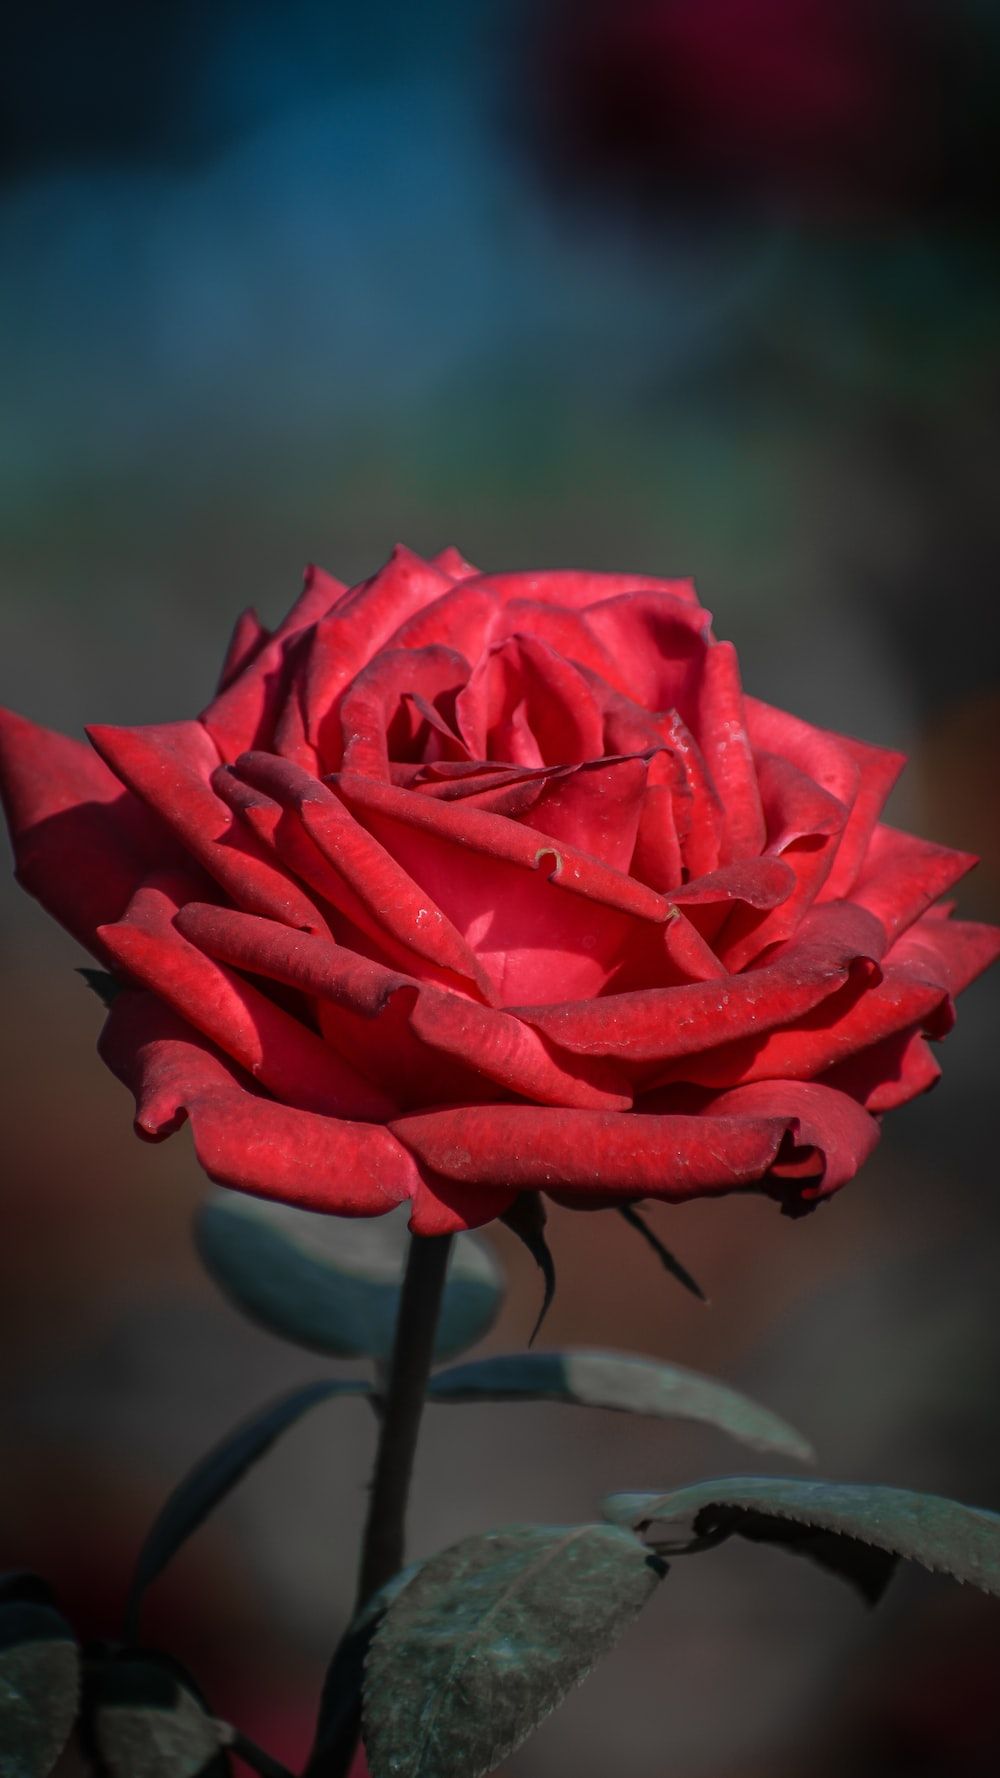  Rote Rosen Hintergrundbild 1000x1778. Foto zum Thema Eine Nahaufnahme einer roten Rose mit verschwommenem Hintergrund